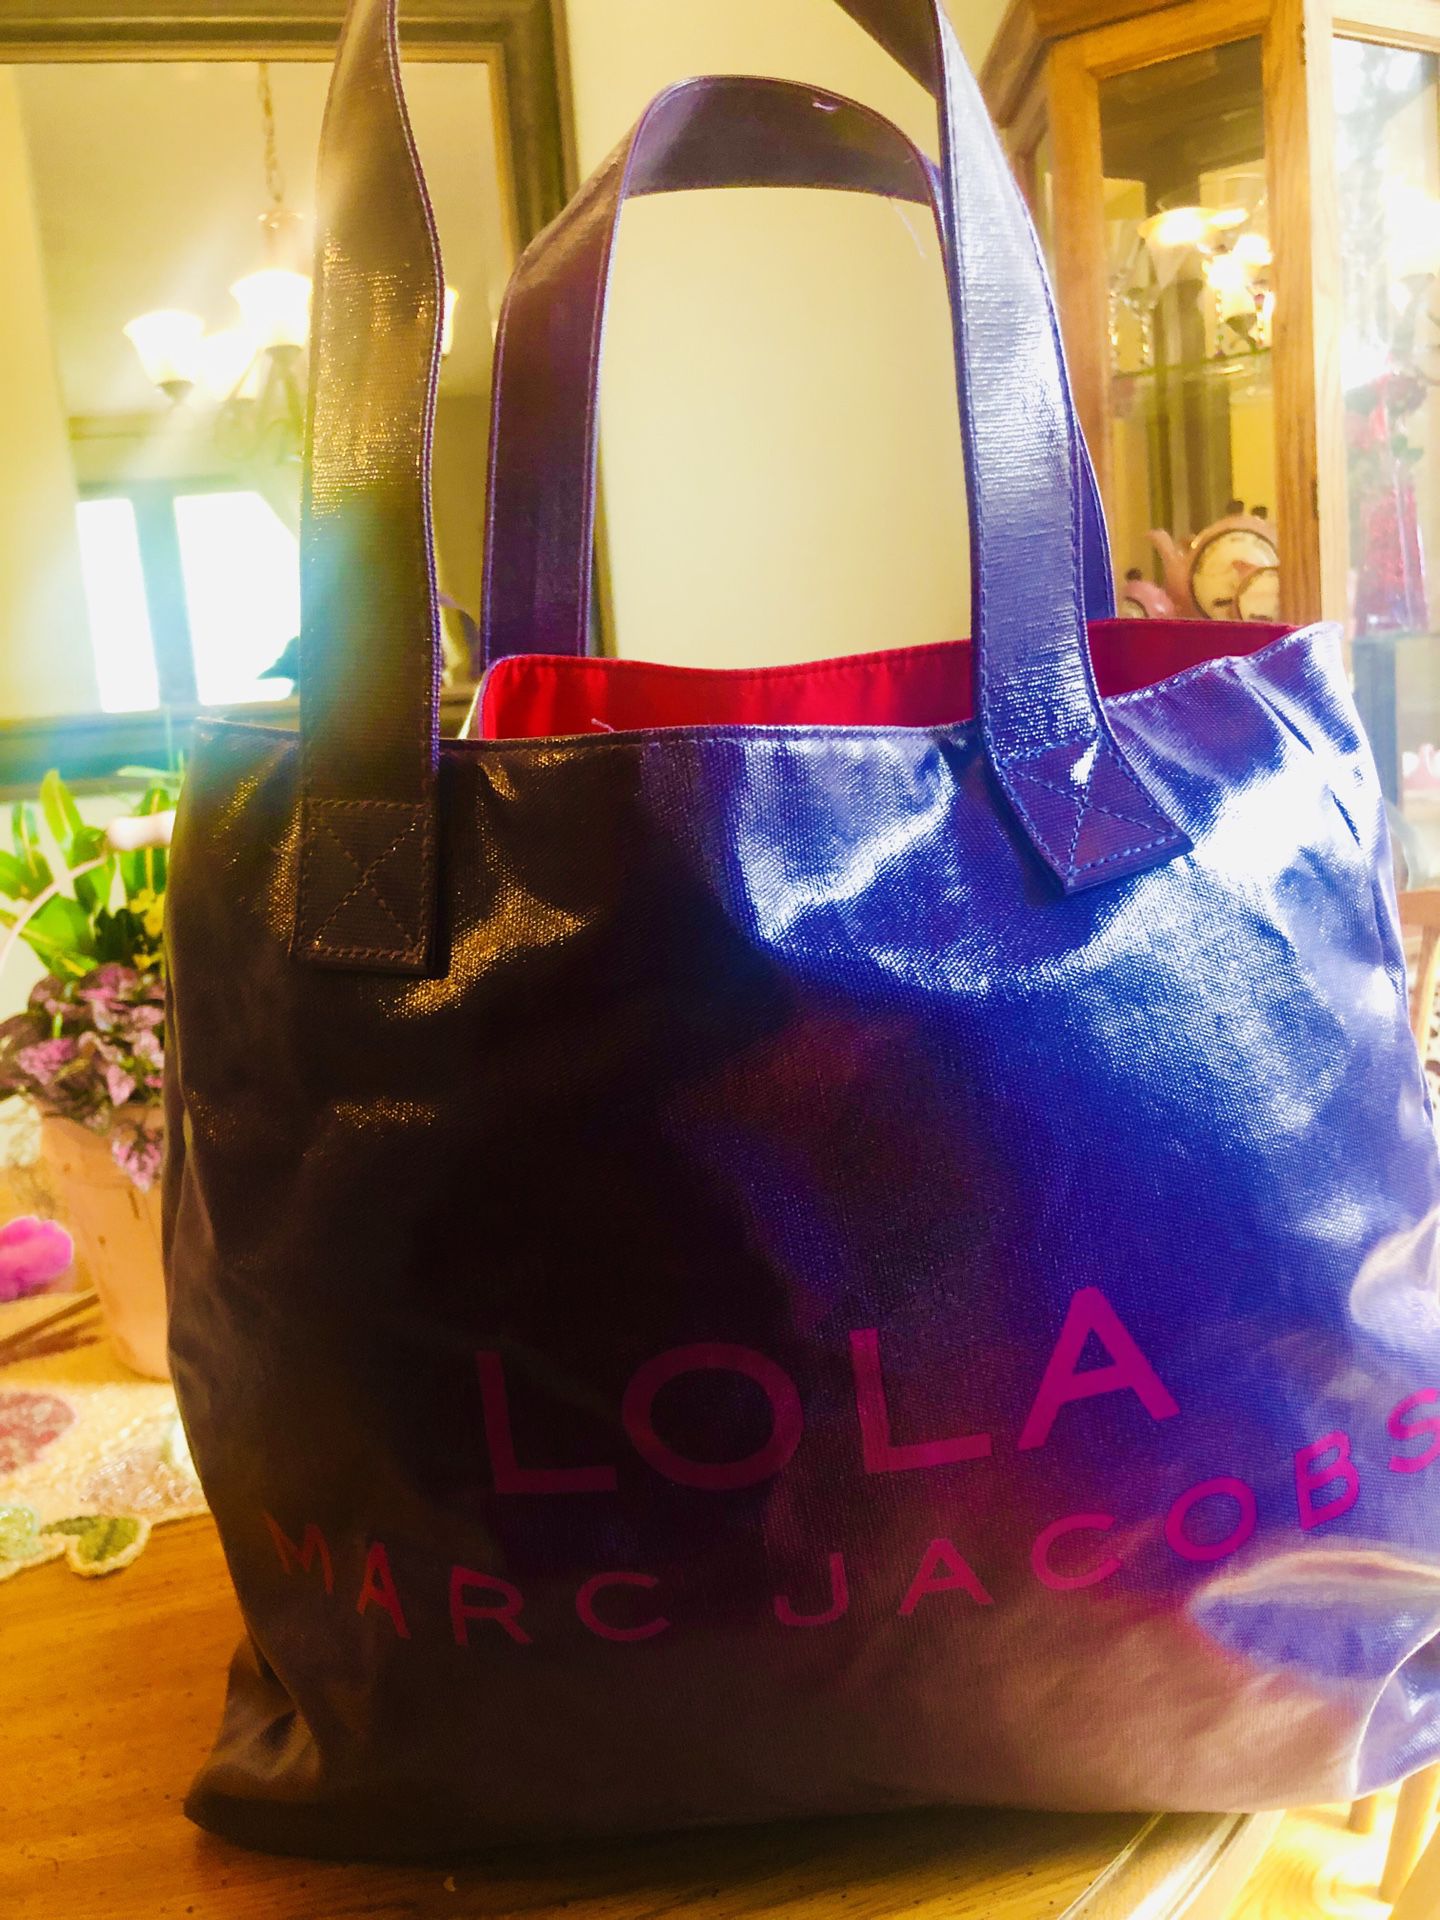 Marc Jacobs Lola purse/beach bag